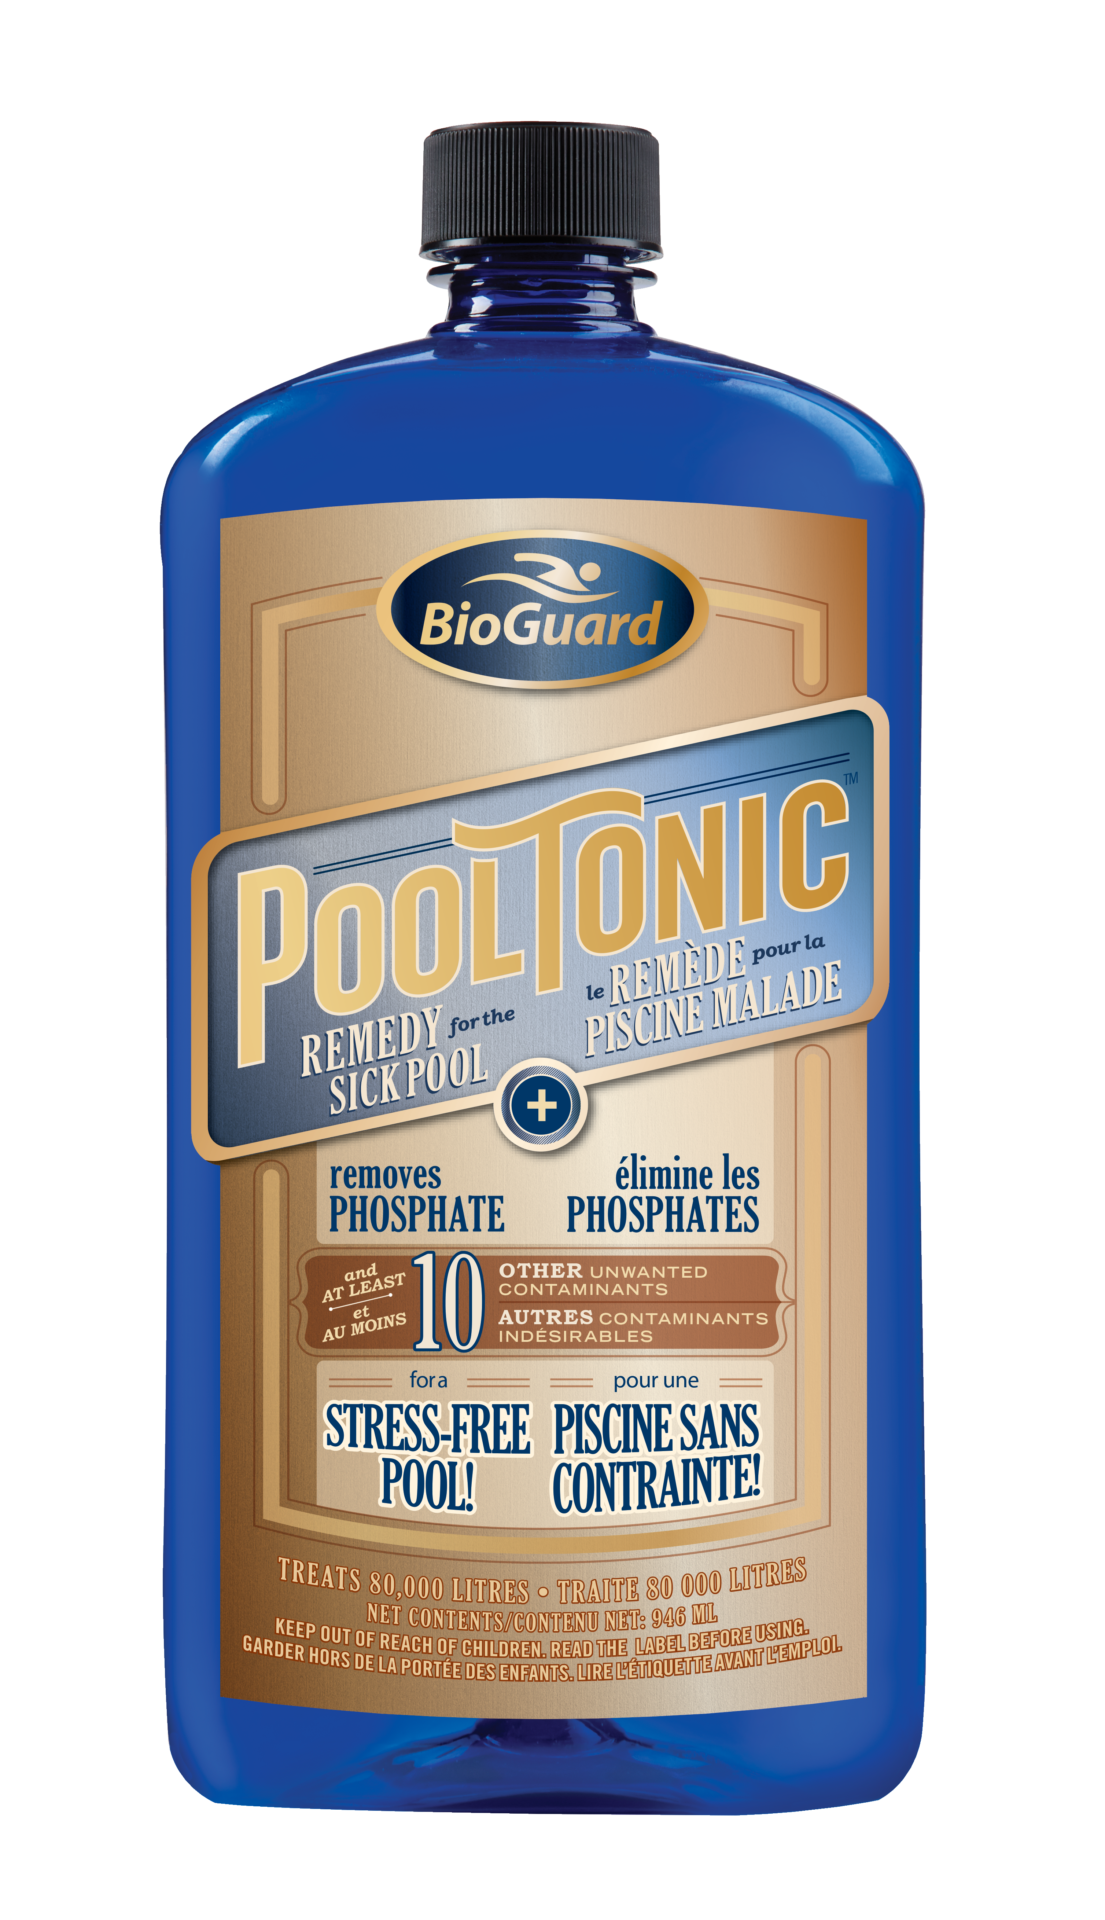 BioGuard Pool Tonic 946ml 1 - BioGuard Pool Tonic 946ml